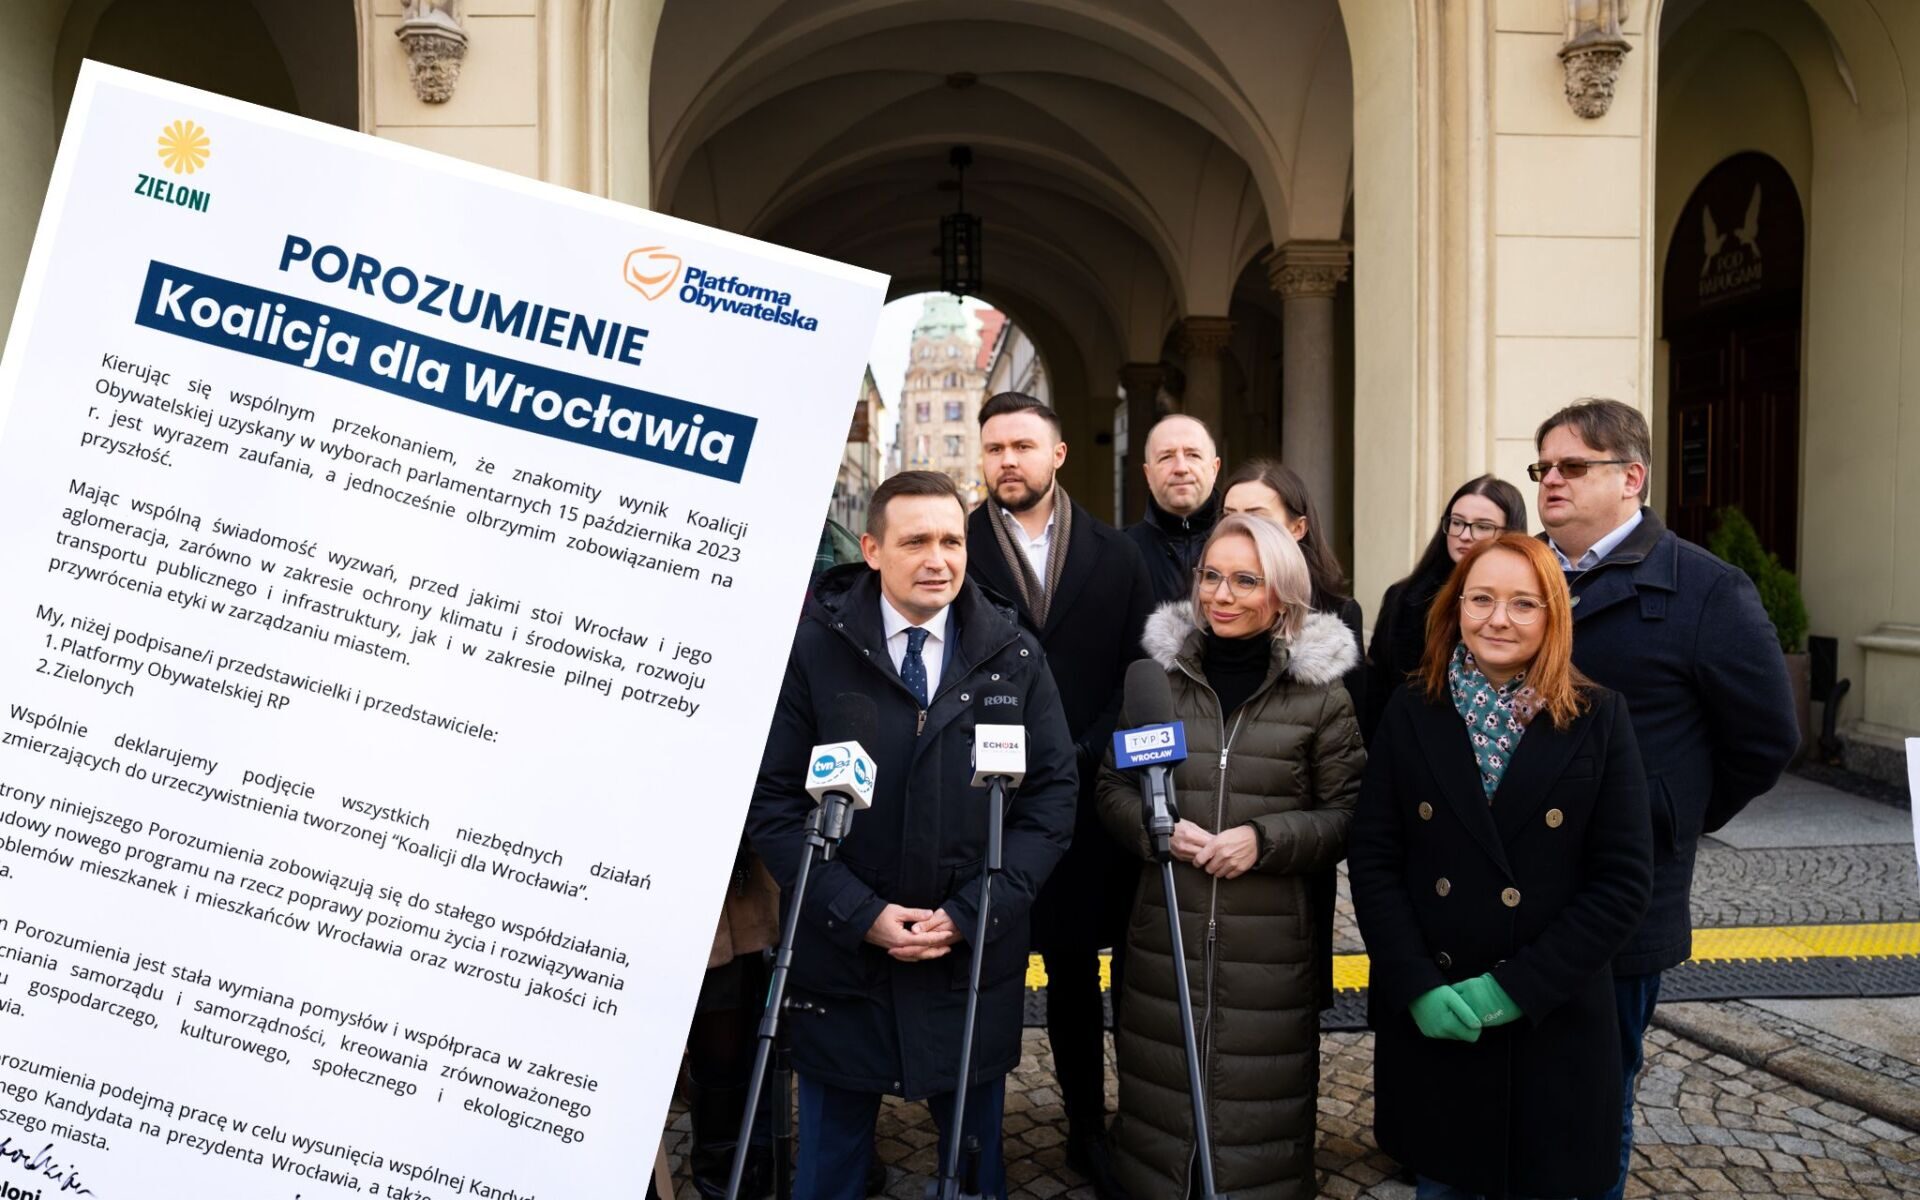 Koalicja dla Wrocławia. PO i Zieloni podpisali porozumienie [ZDJĘCIA], fot. Michał Jaros